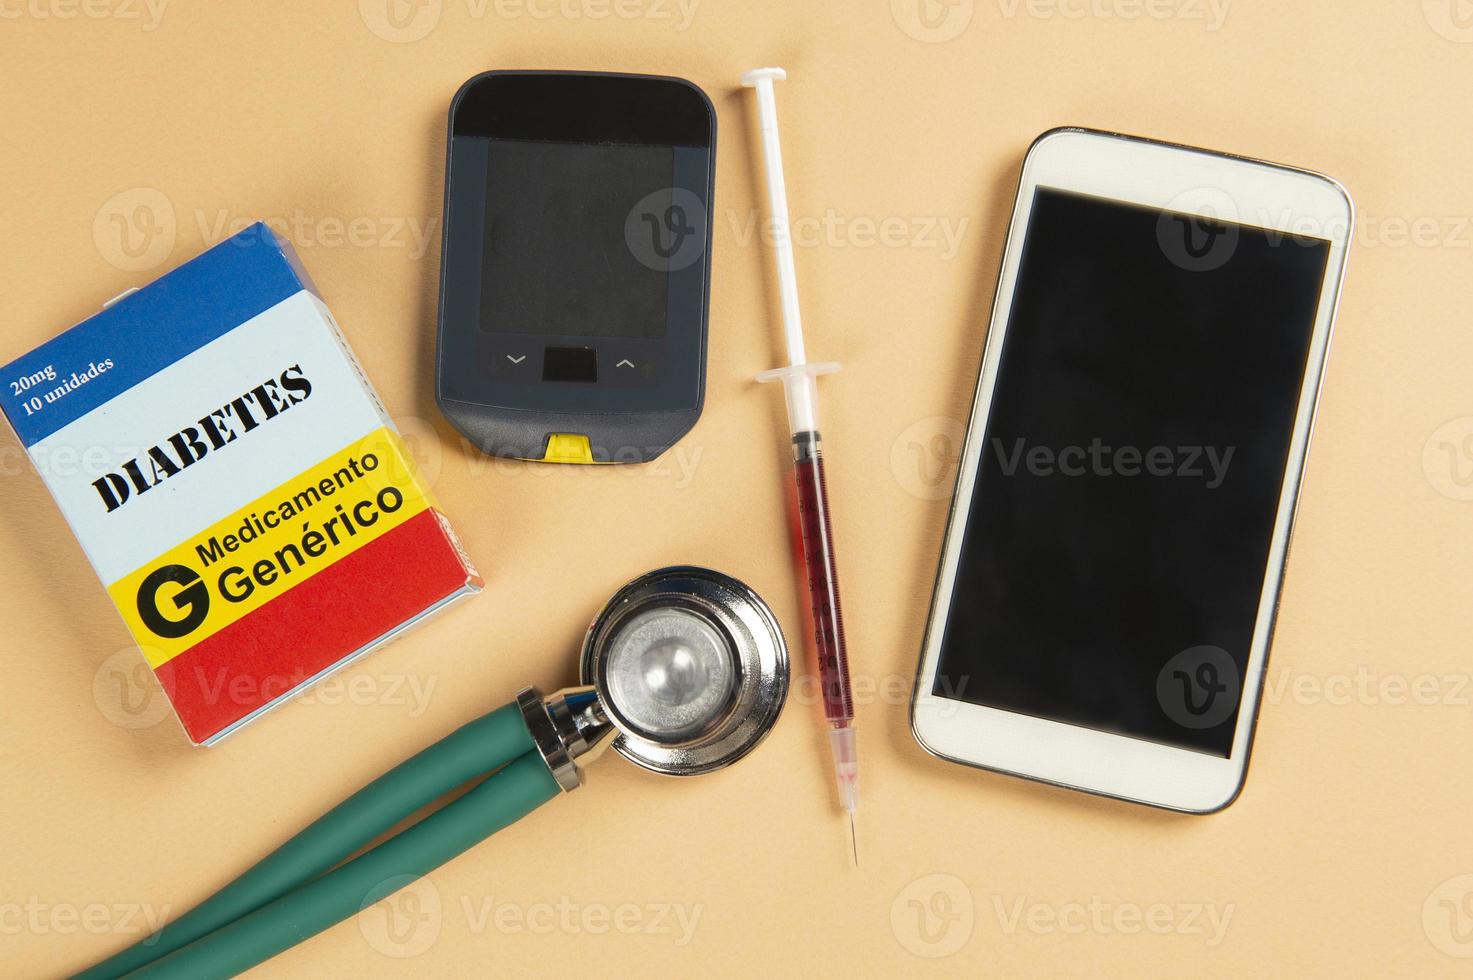 caja de medicamentos falsos con el nombre de la enfermedad diabetes y un glucómetro. foto